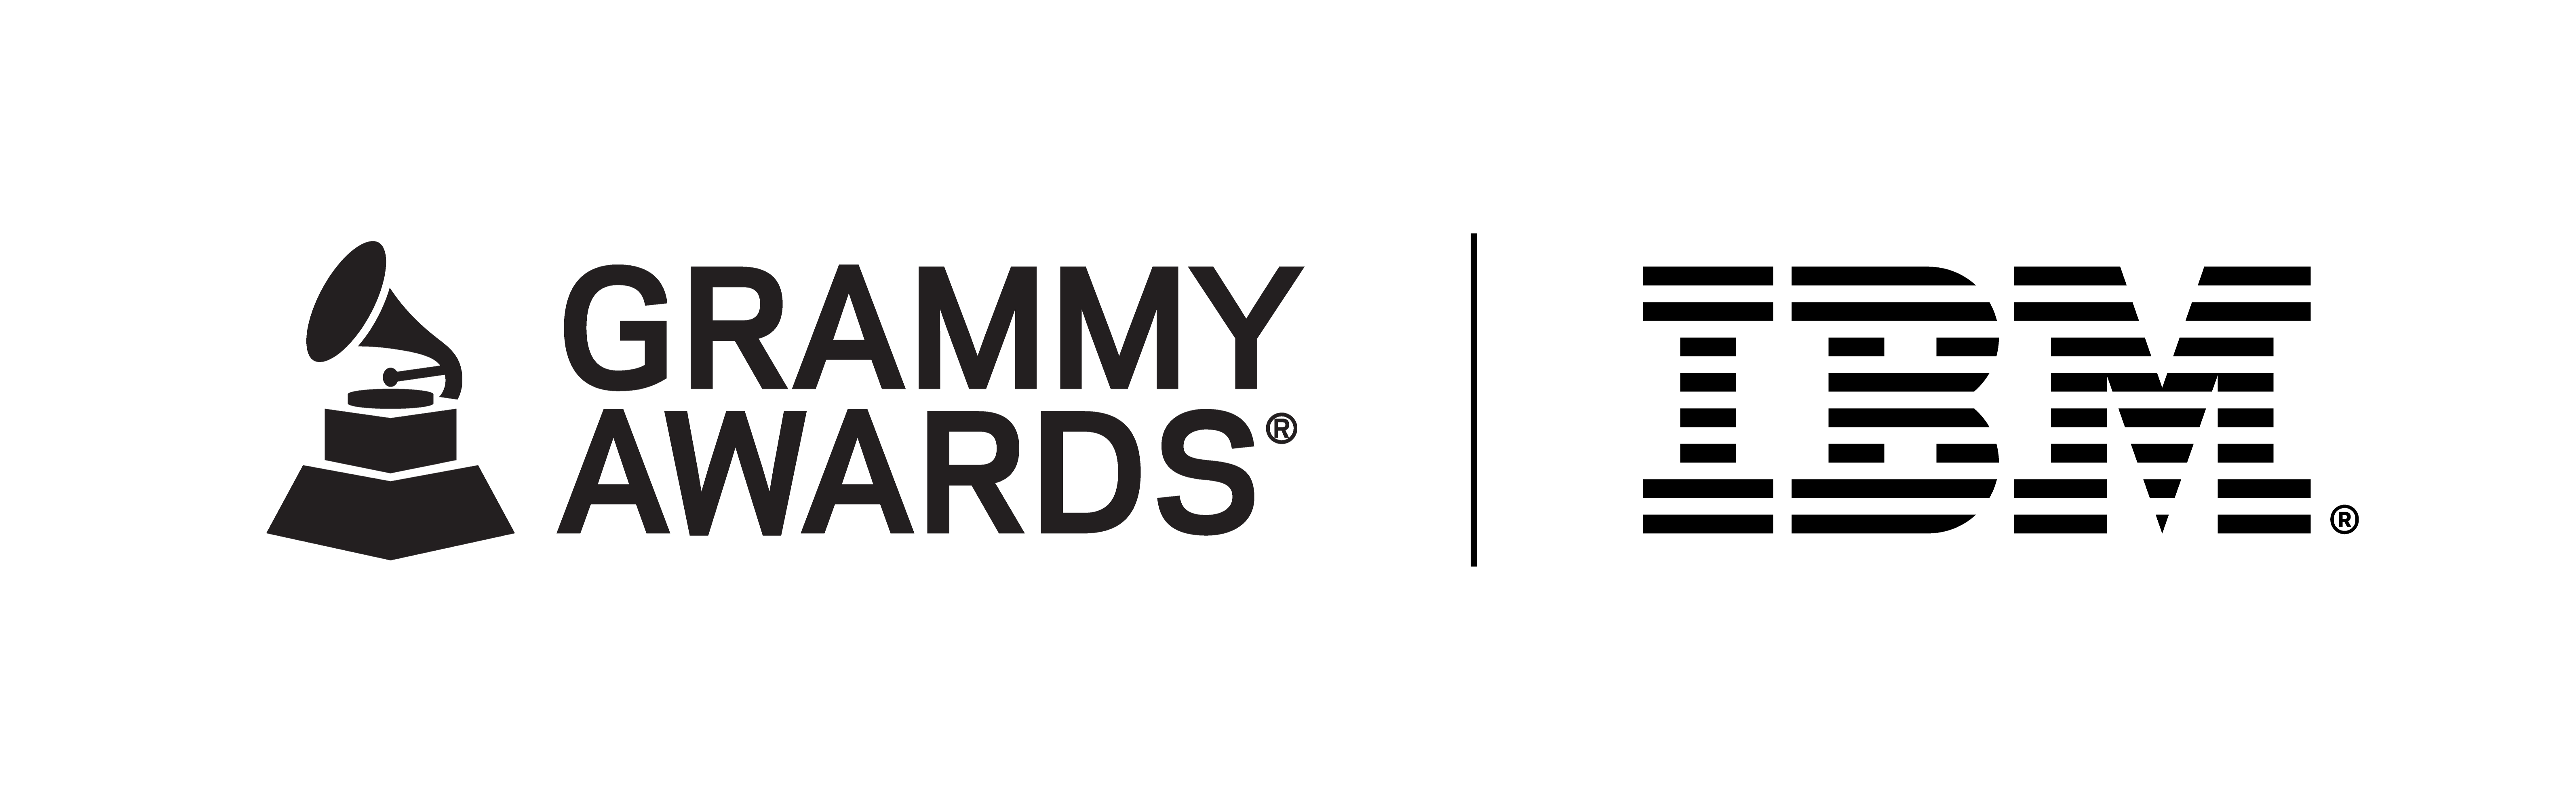 Bloqueo del logotipo de los premios IBM-GRAMMY con gramófono